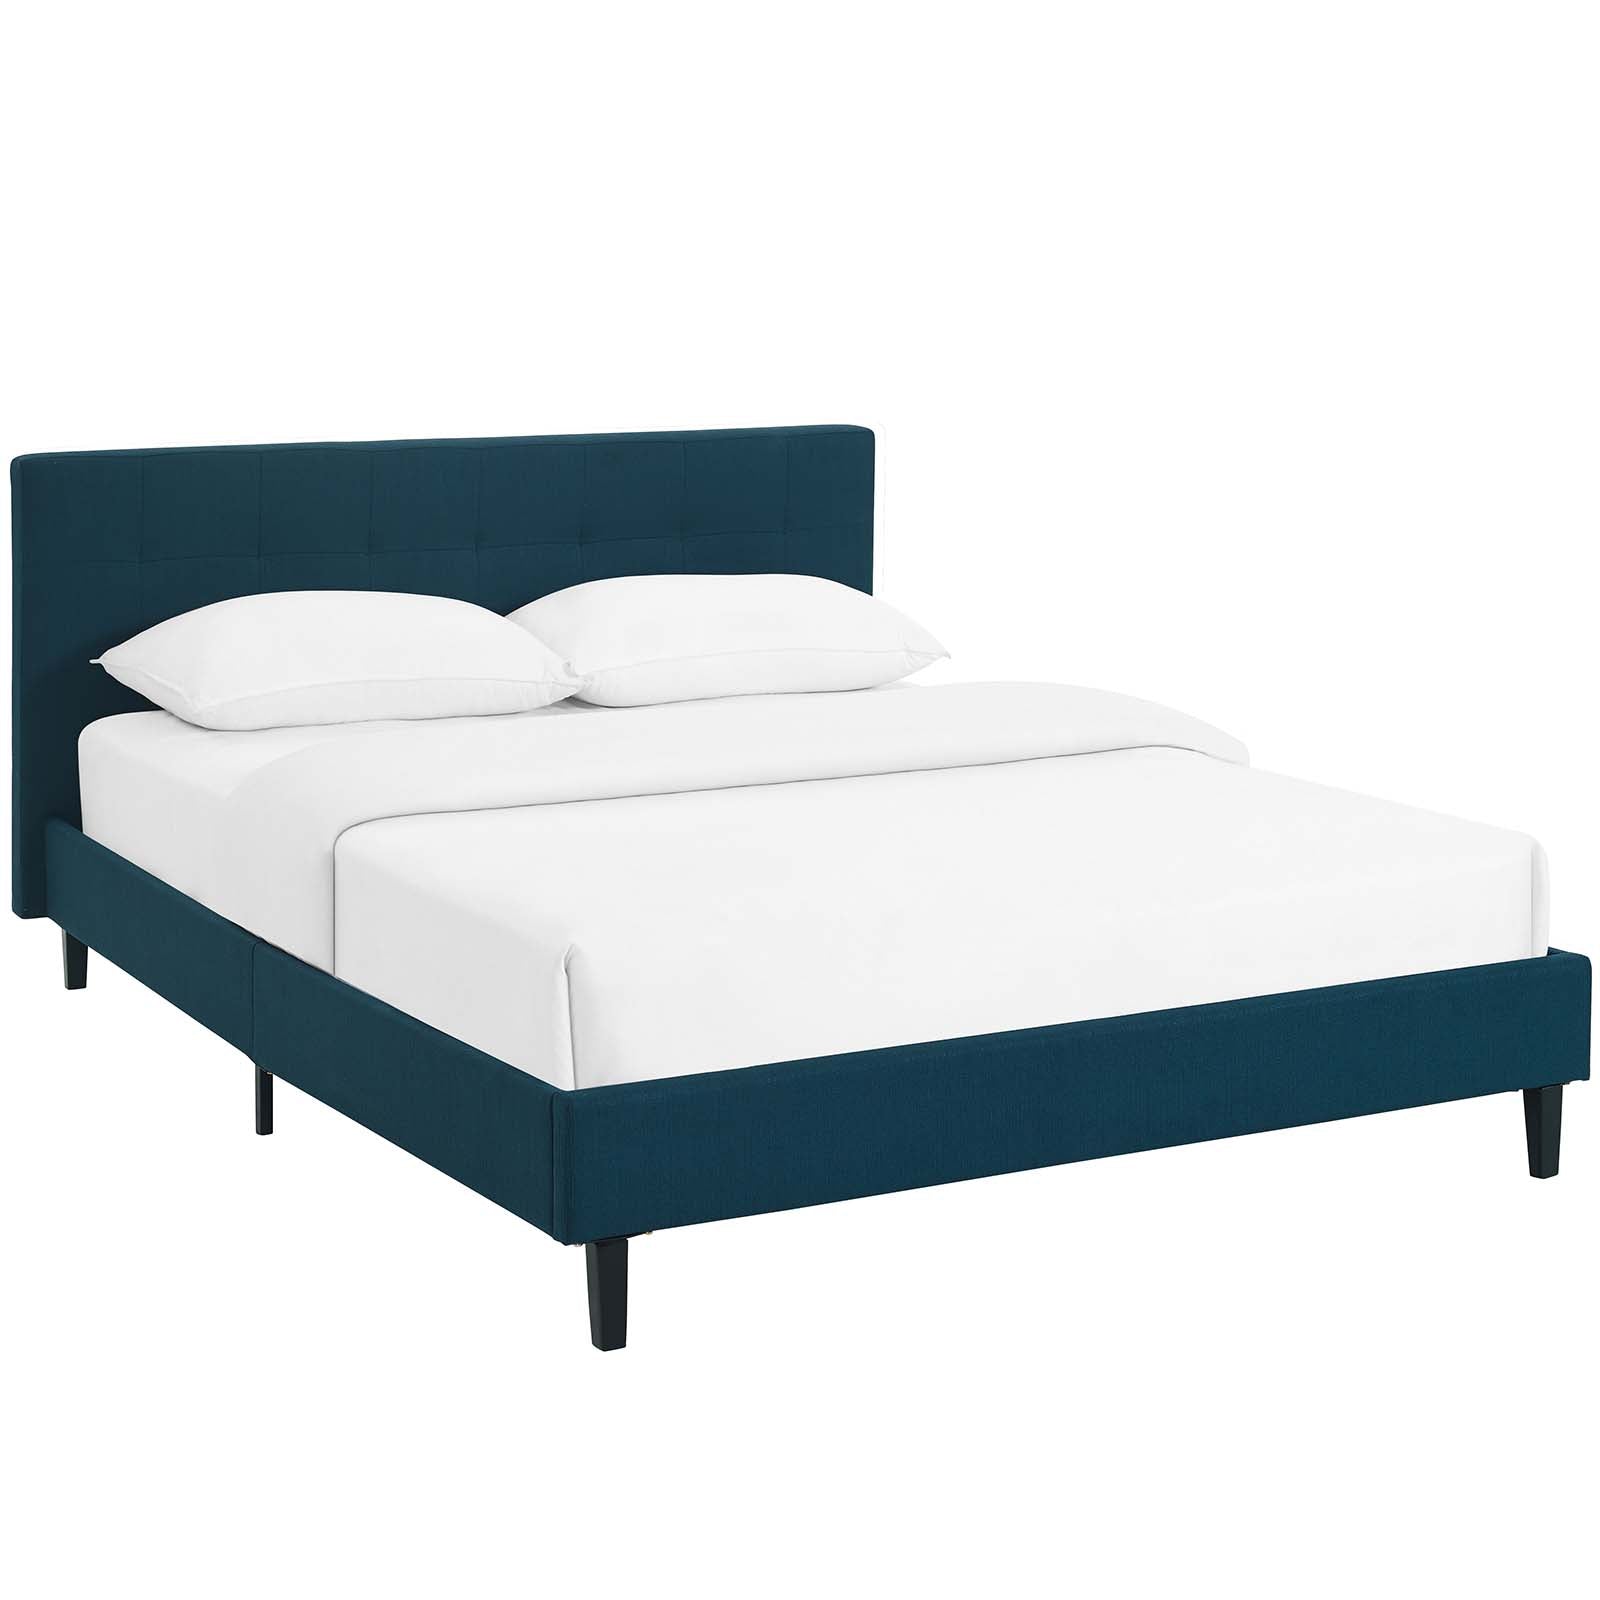 Modway Beds - Linnea Full Bed Azure